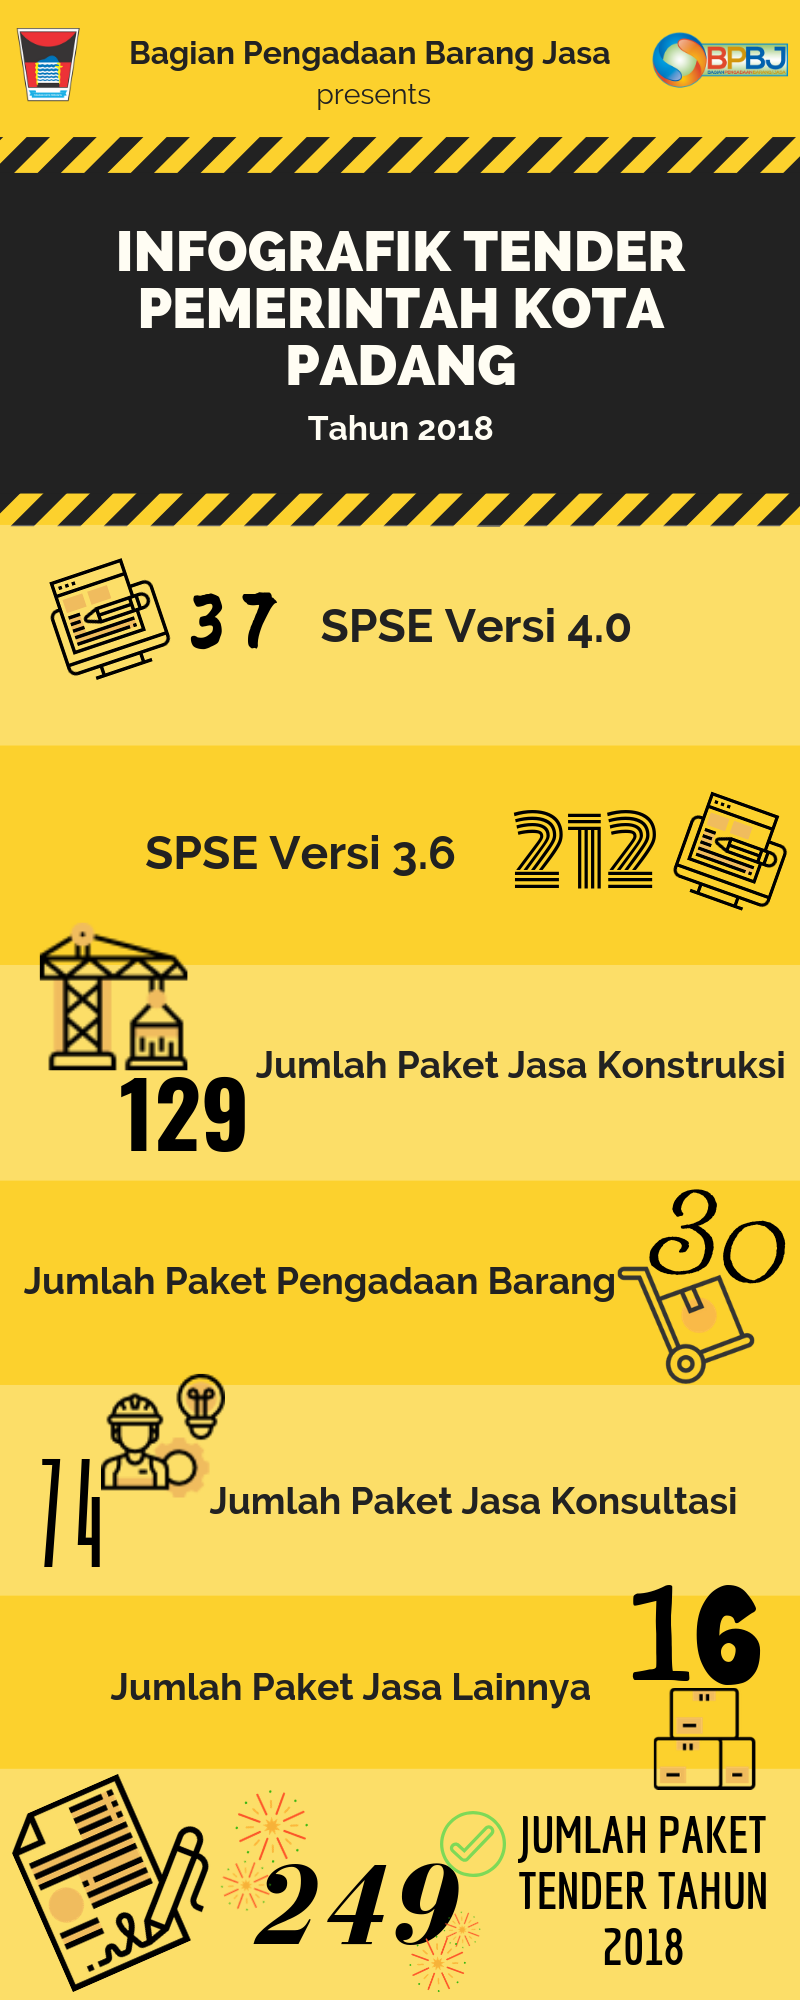 Infografik Tender Pemerintah Kota Padang Tahun 2018